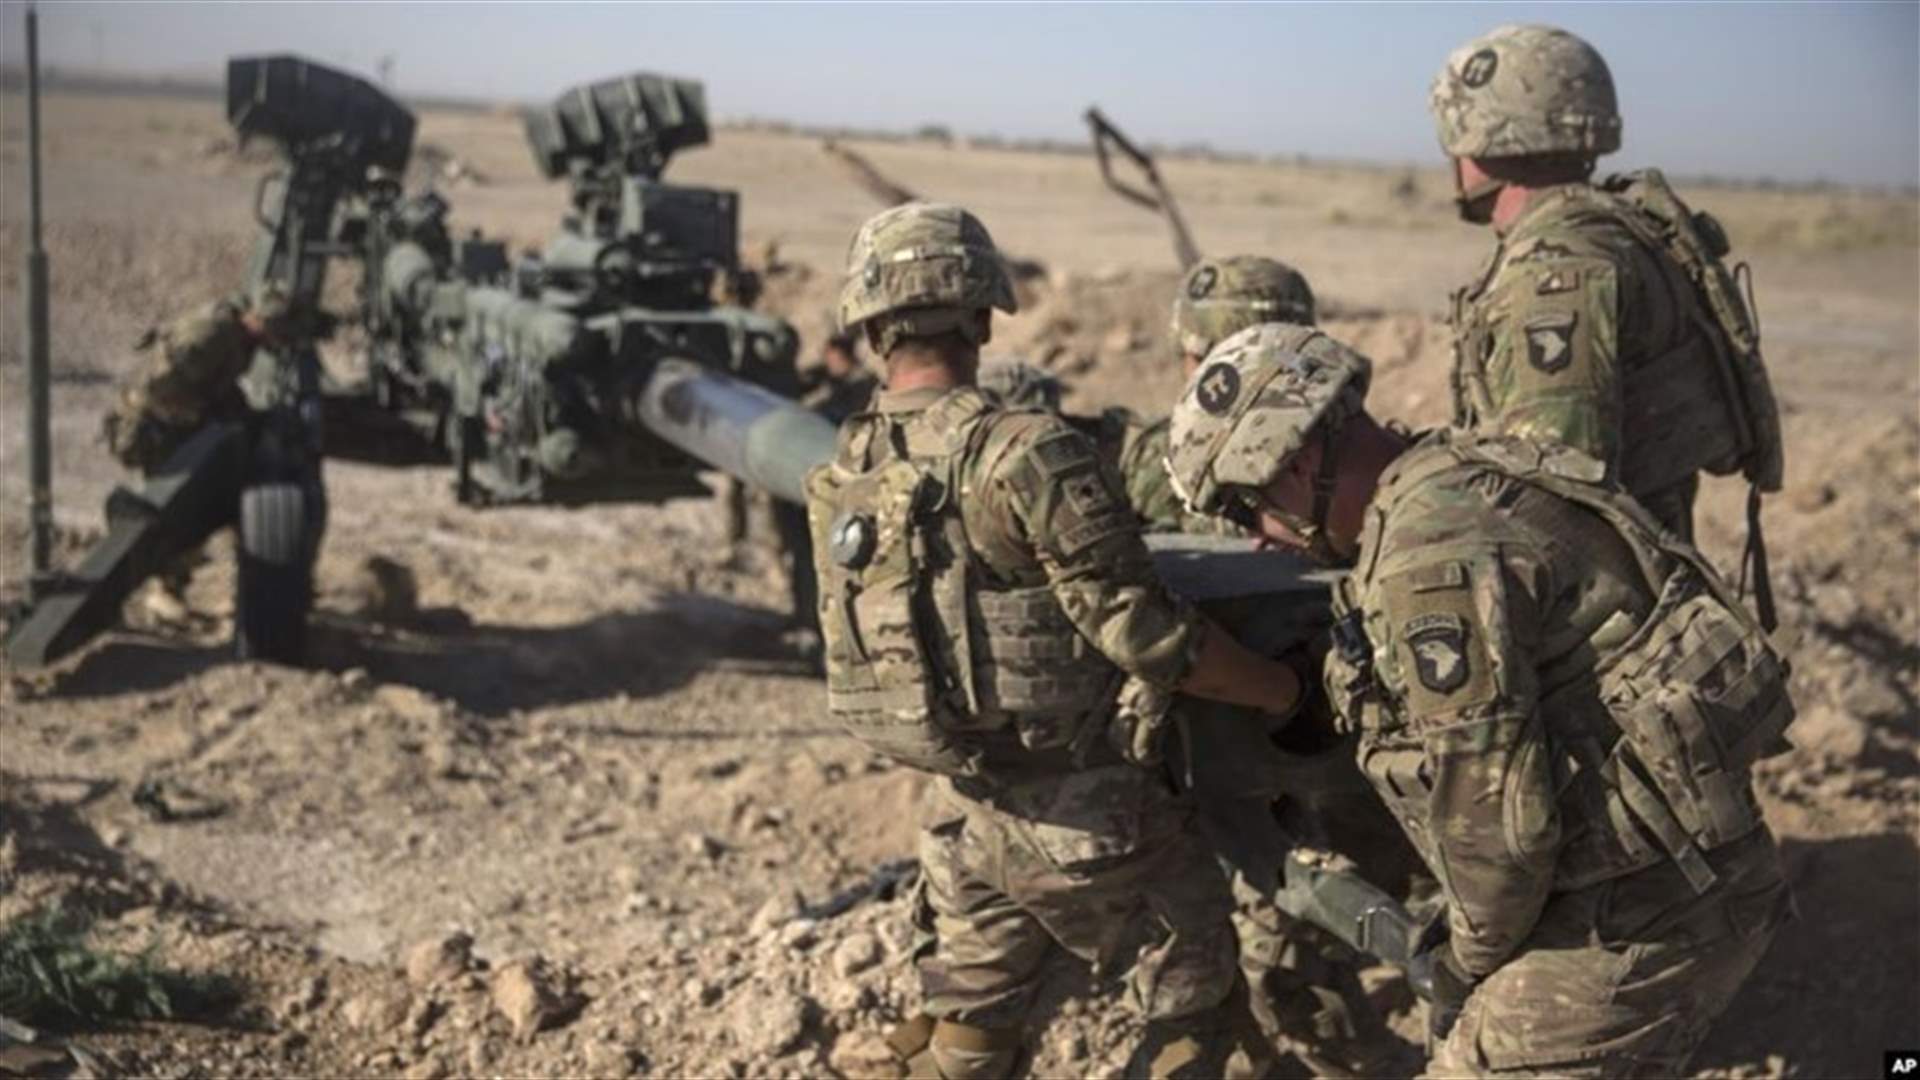 مقتل جنديين أميركيين في أفغانستان